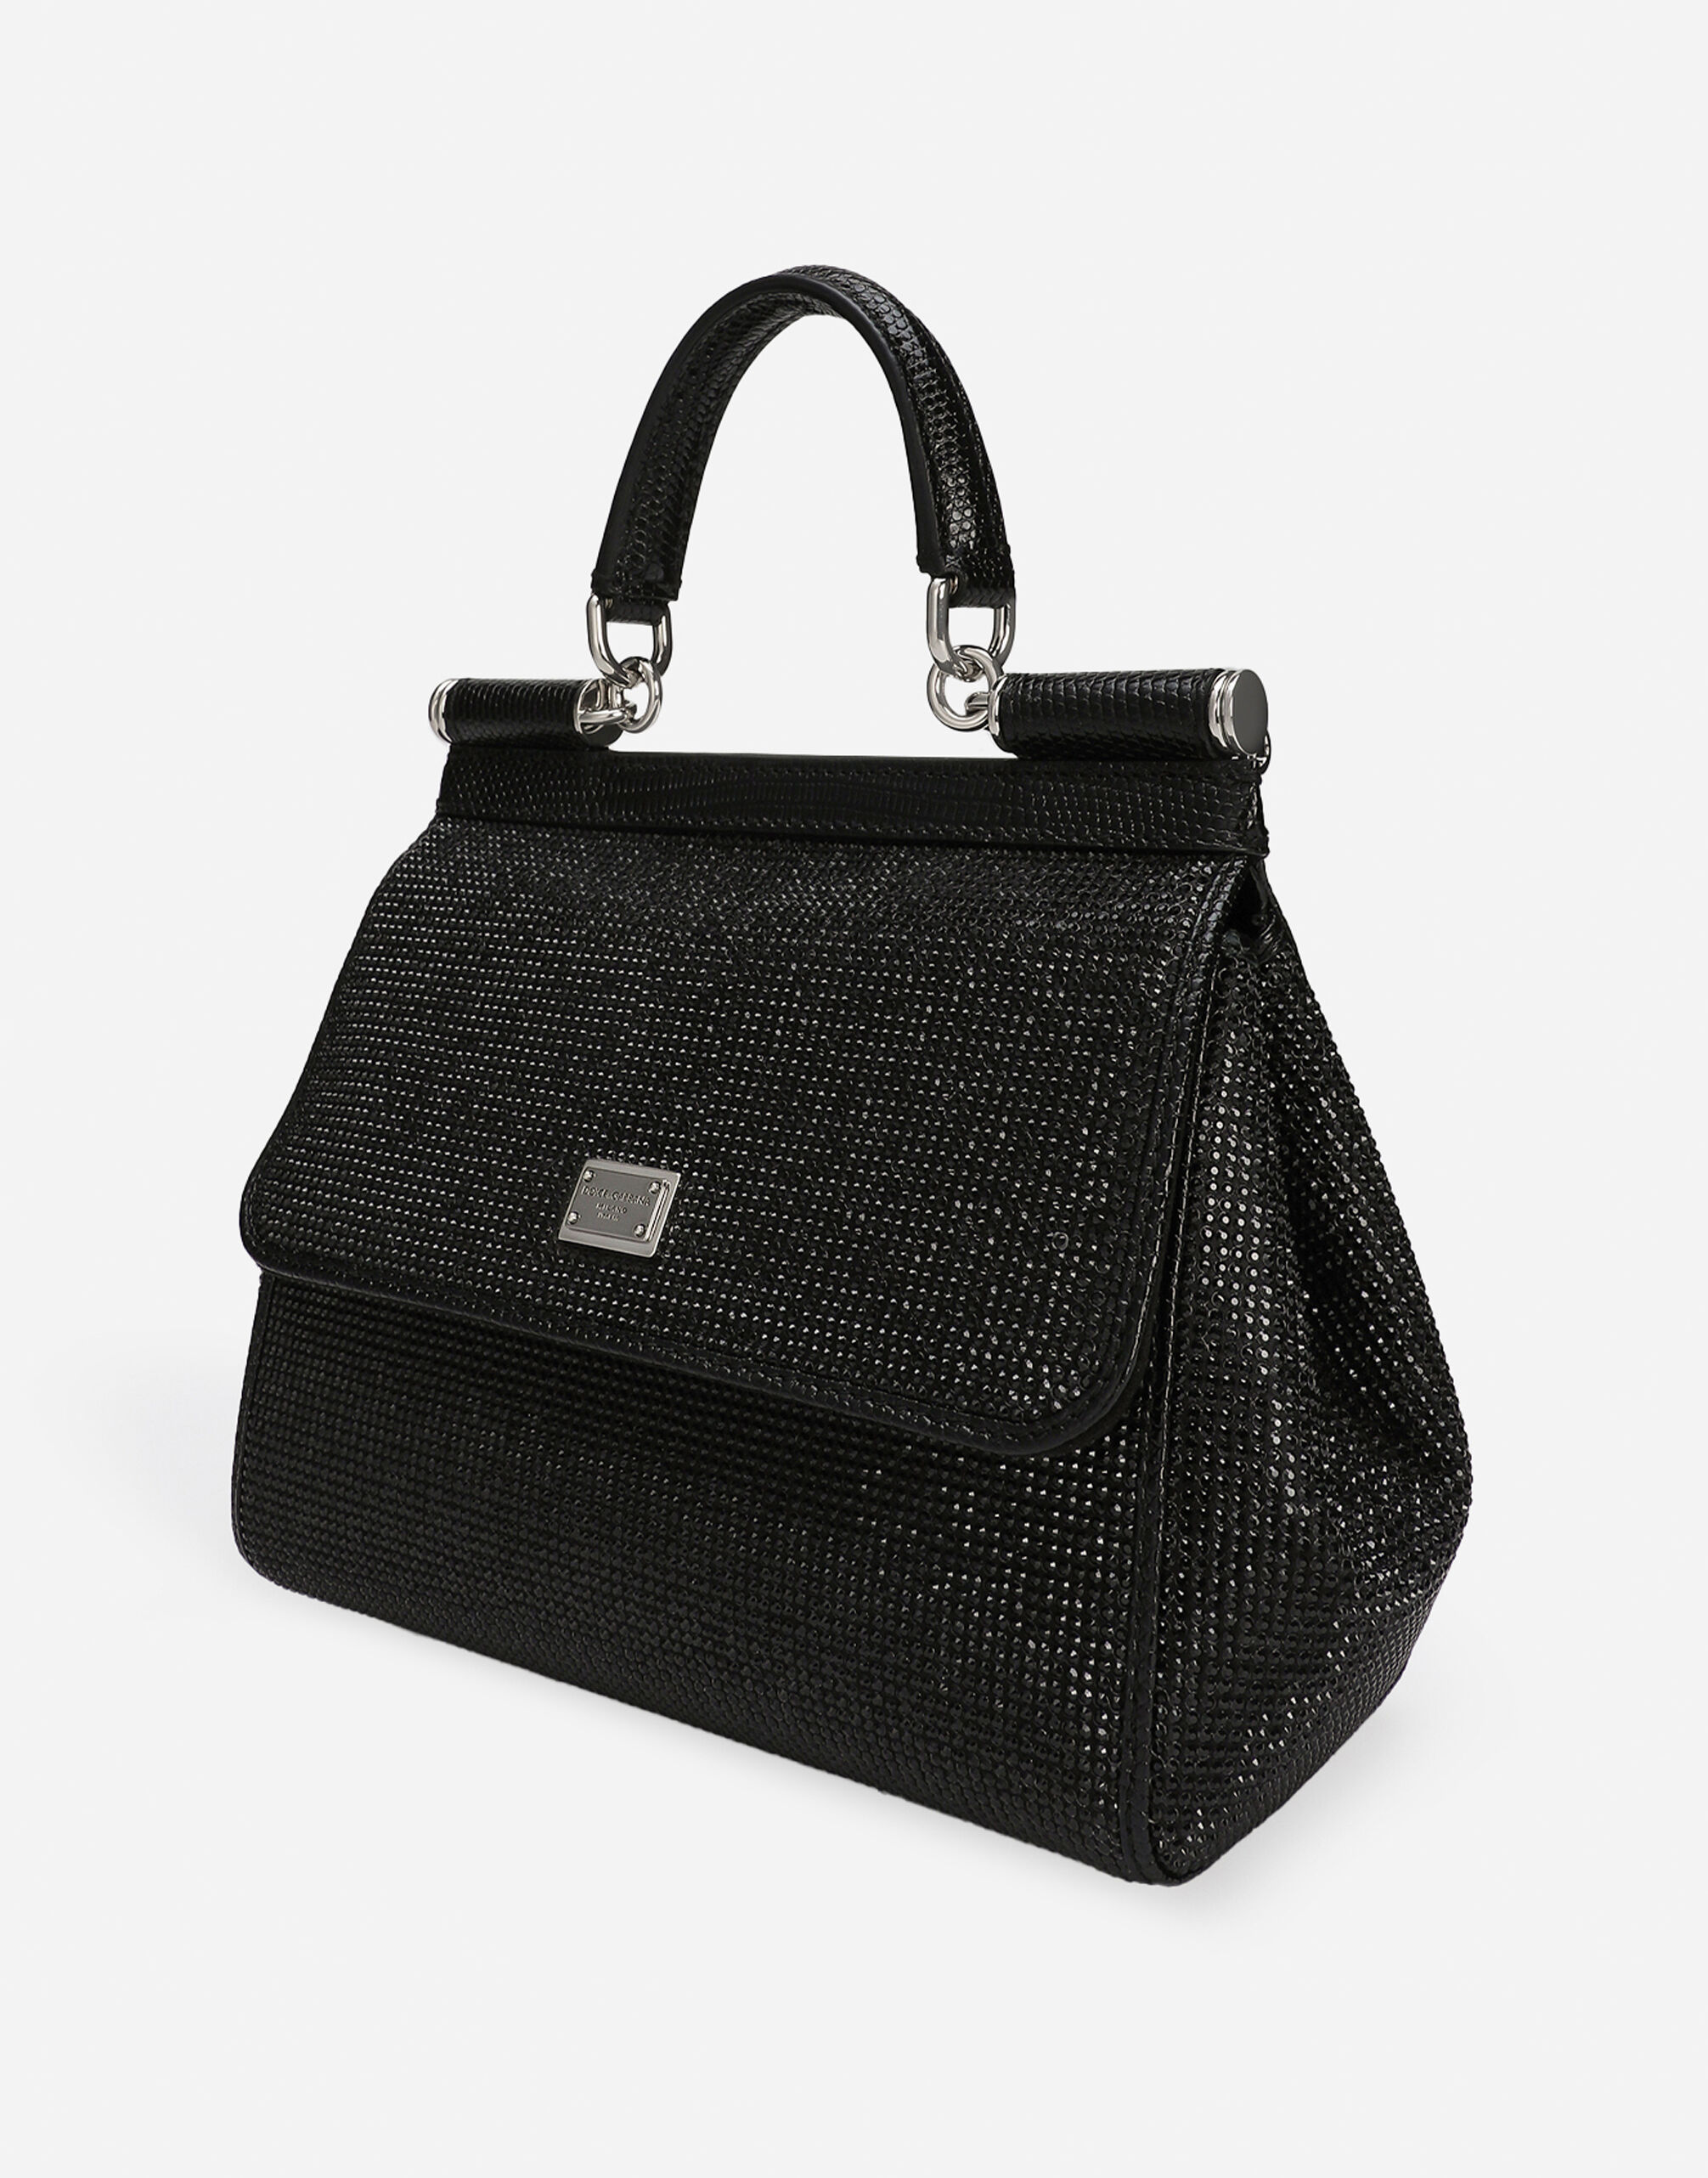 Medium Sicily handbag in Black for | Dolce&Gabbana® US